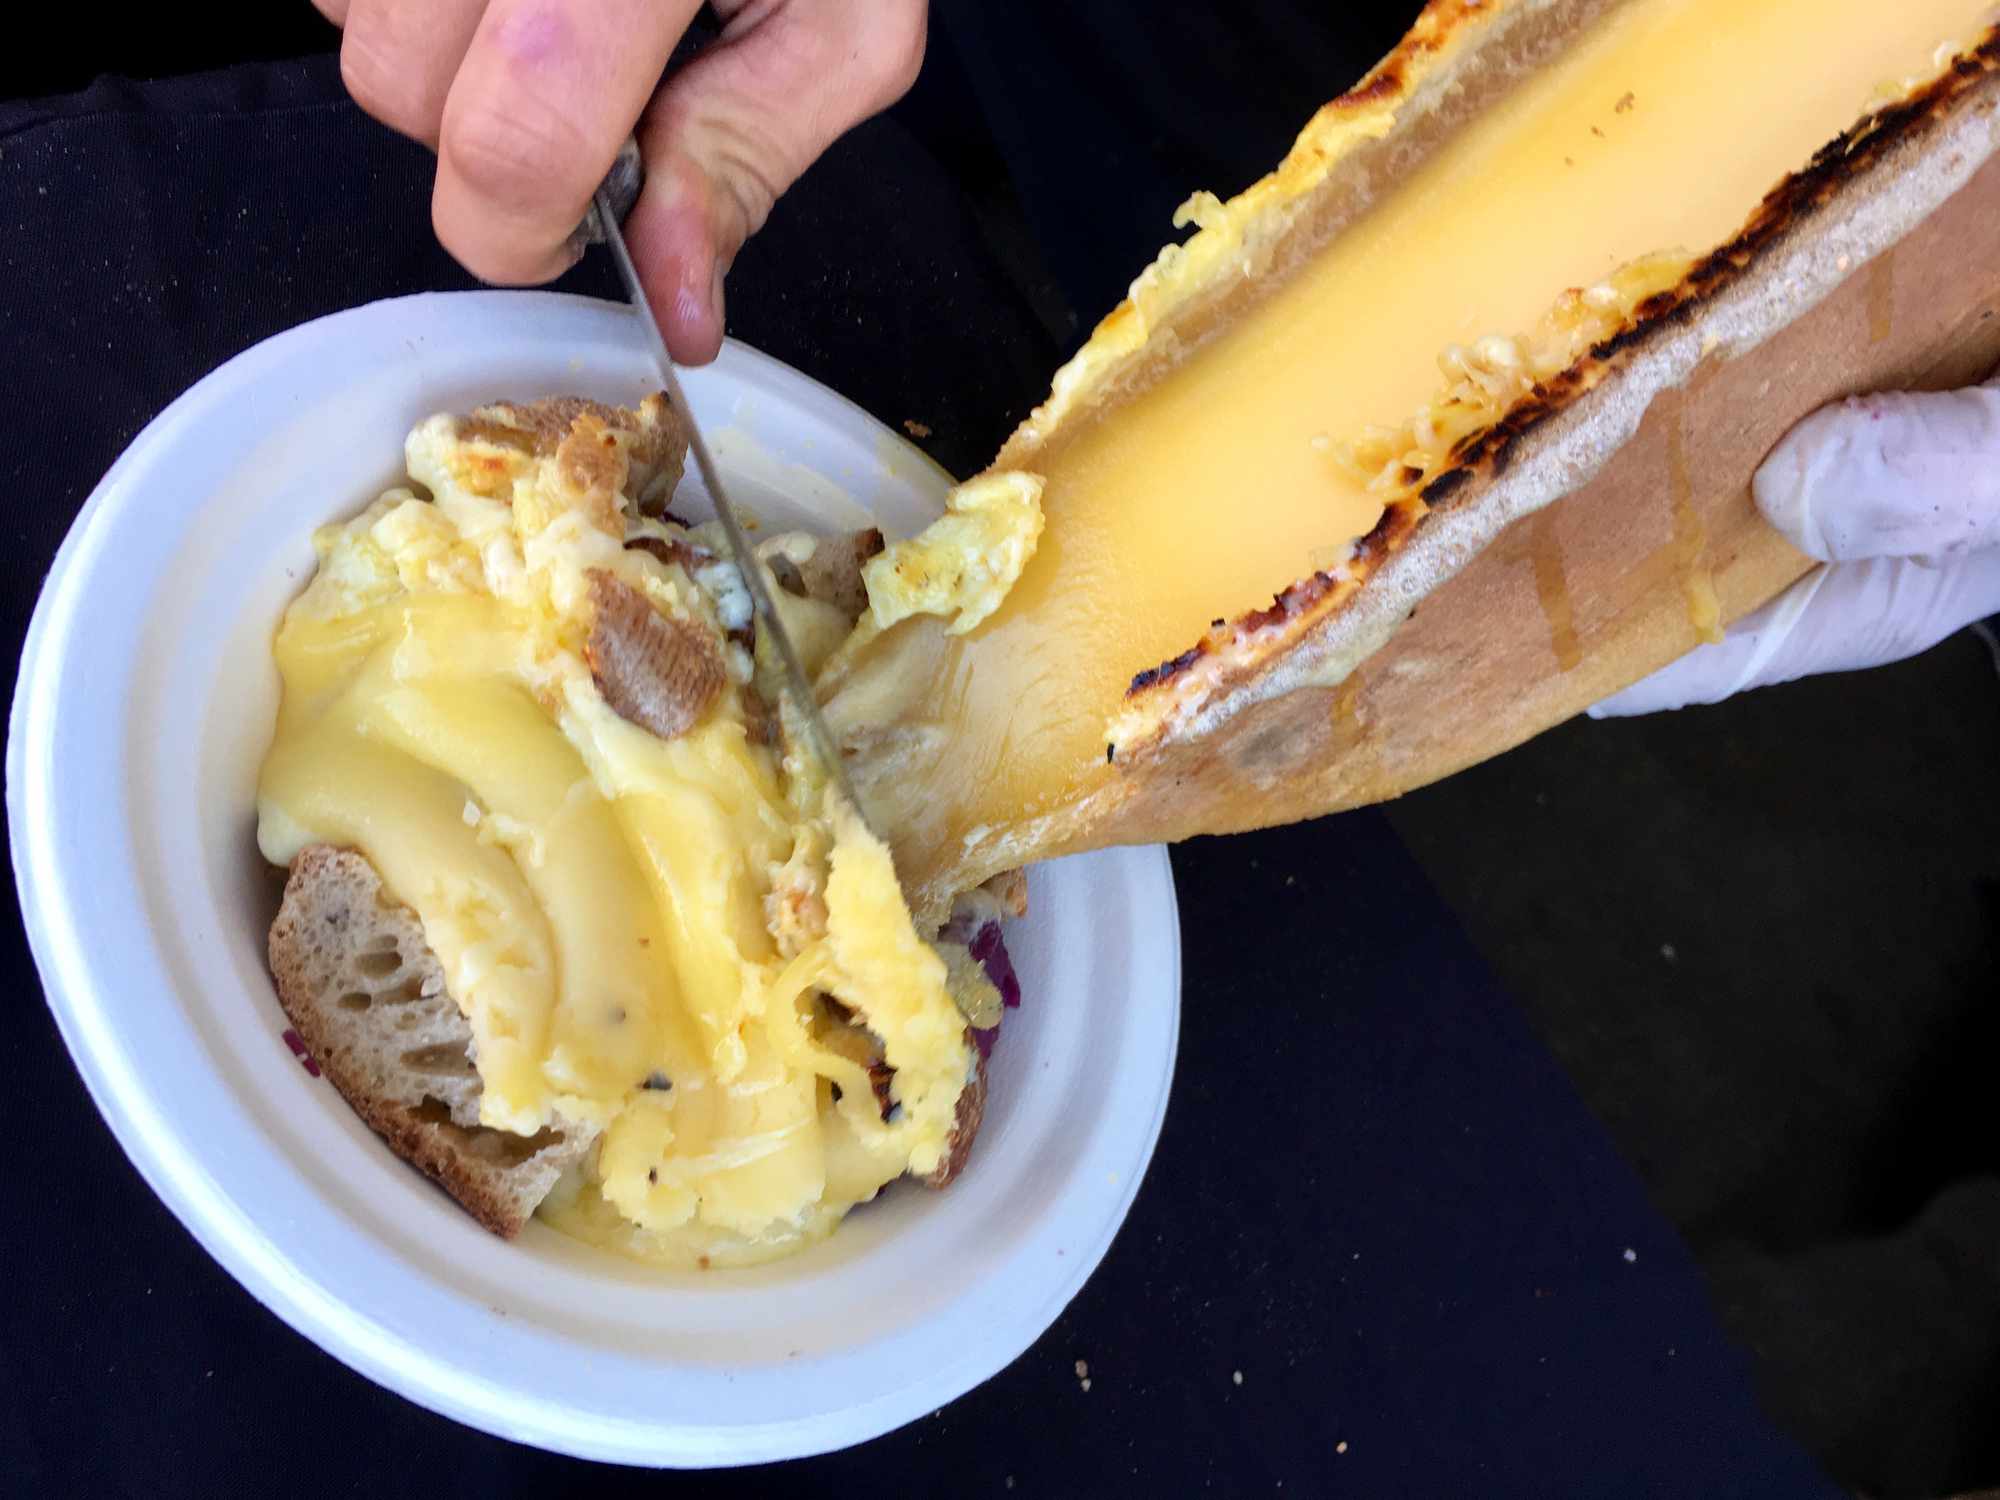 Queso raclette derretido siendo raspado de una rueda de queso sobre un bol de cubos de pan y patatas